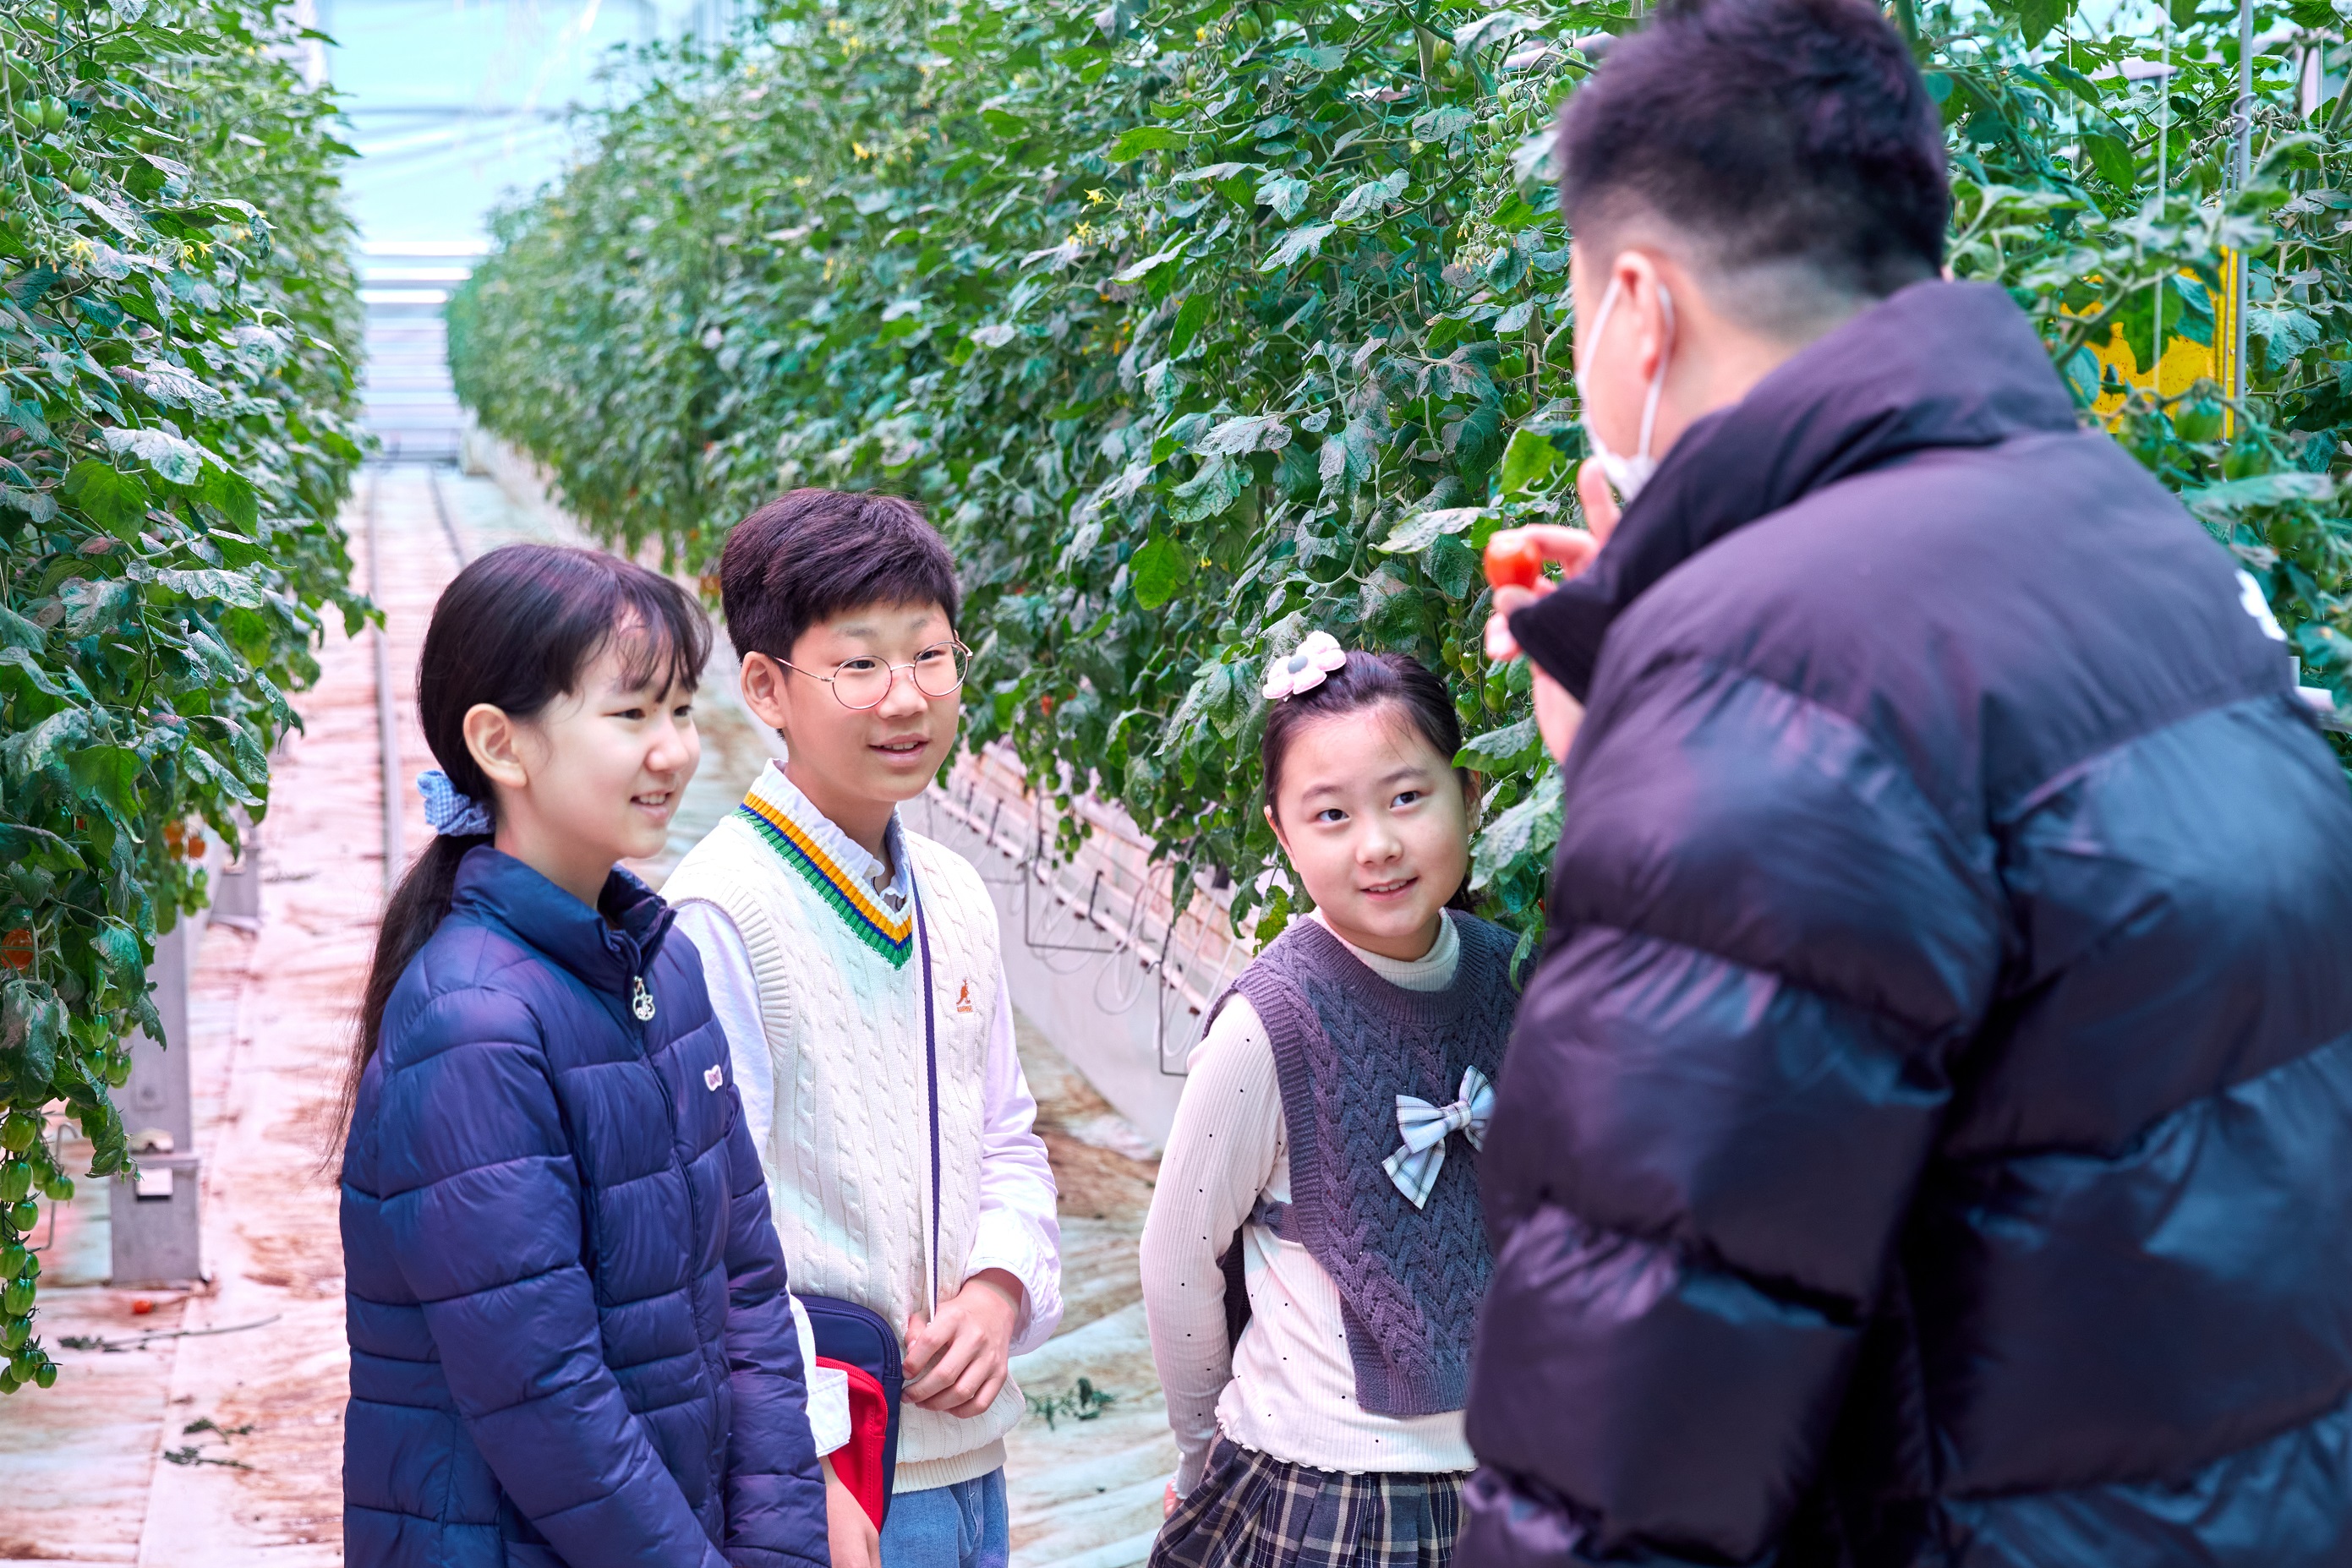 김상우(오른쪽) 푸르메소셜팜 기획팀장이 녹색 방울토마토는 숙성이 더 필요하니 따면 안 되고, 너무 빨갛게 익은 것도 상품 가치가 없을 수도 있어 따면 안 된다고 했다.